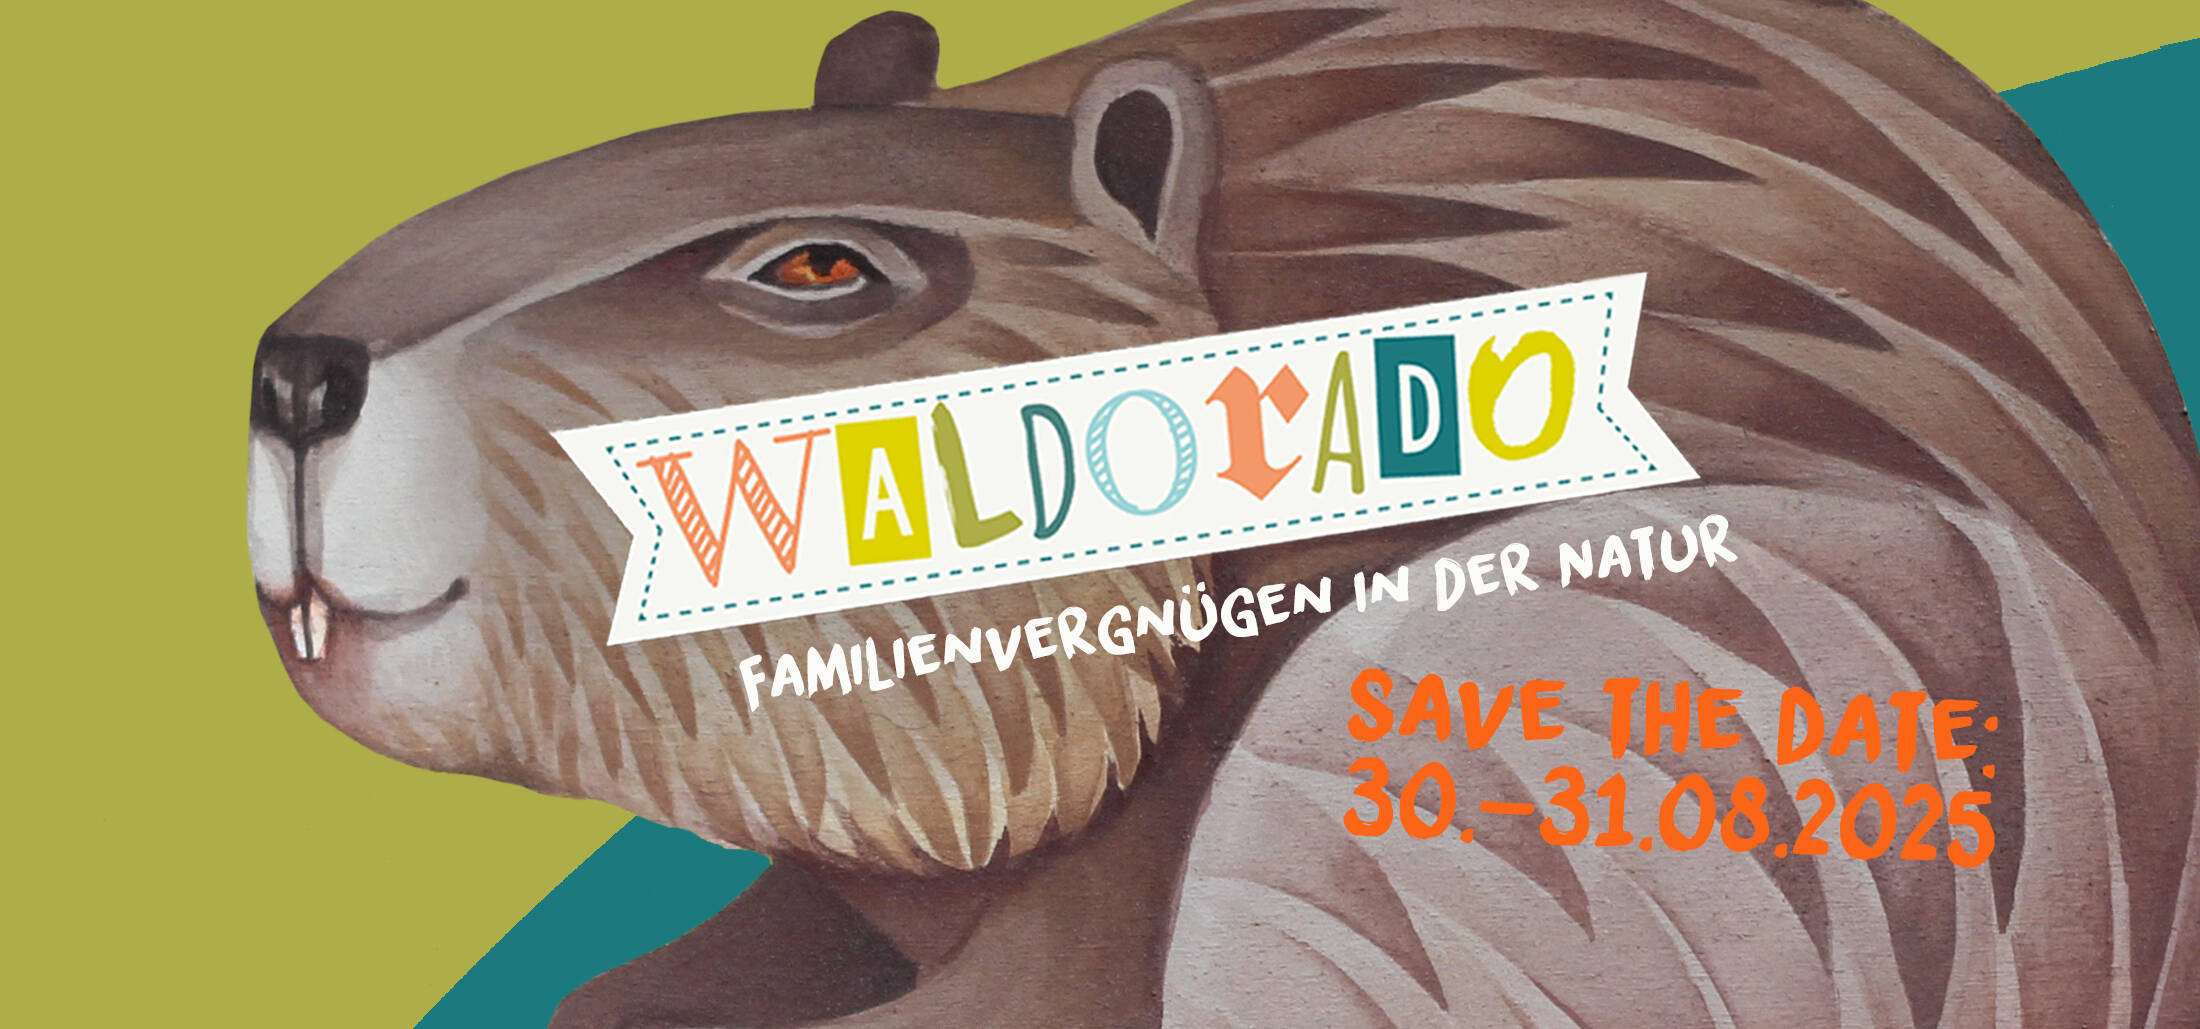 Flyer: Save The Date, 30.–31.08.2025. Schriftzug WALDORADO (bunt und unterschiedliche Fonts) Familienvergüpgen in der Natur, auf einem gemalten freundlichen Biber.